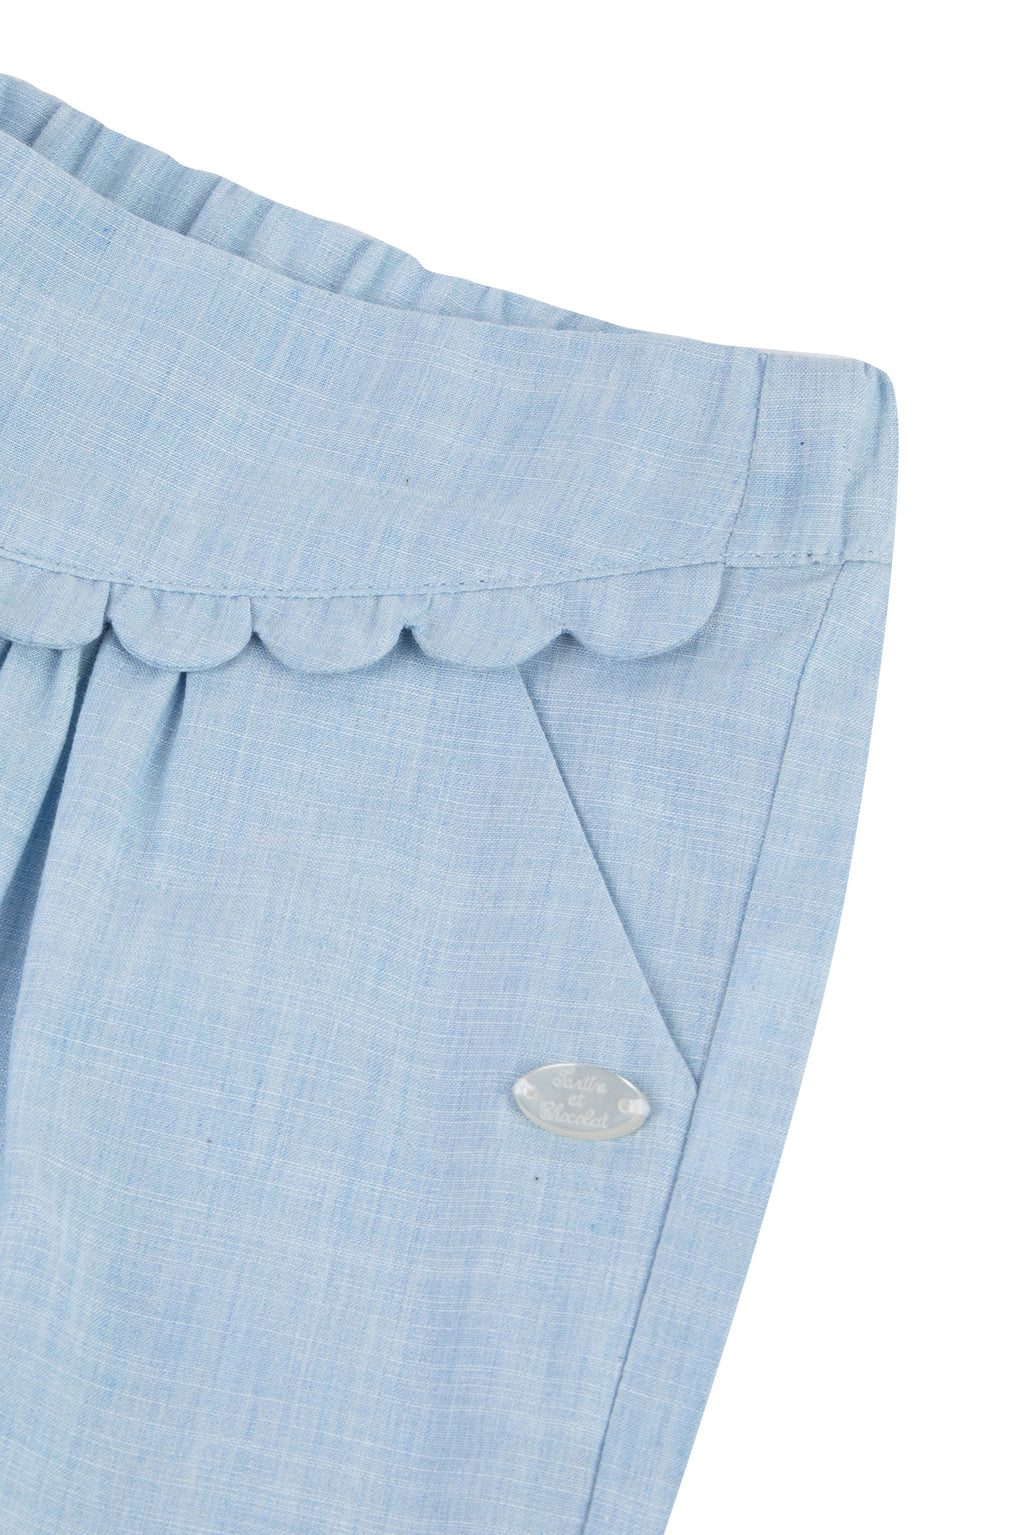 Pantalon - Azul cielo plisado